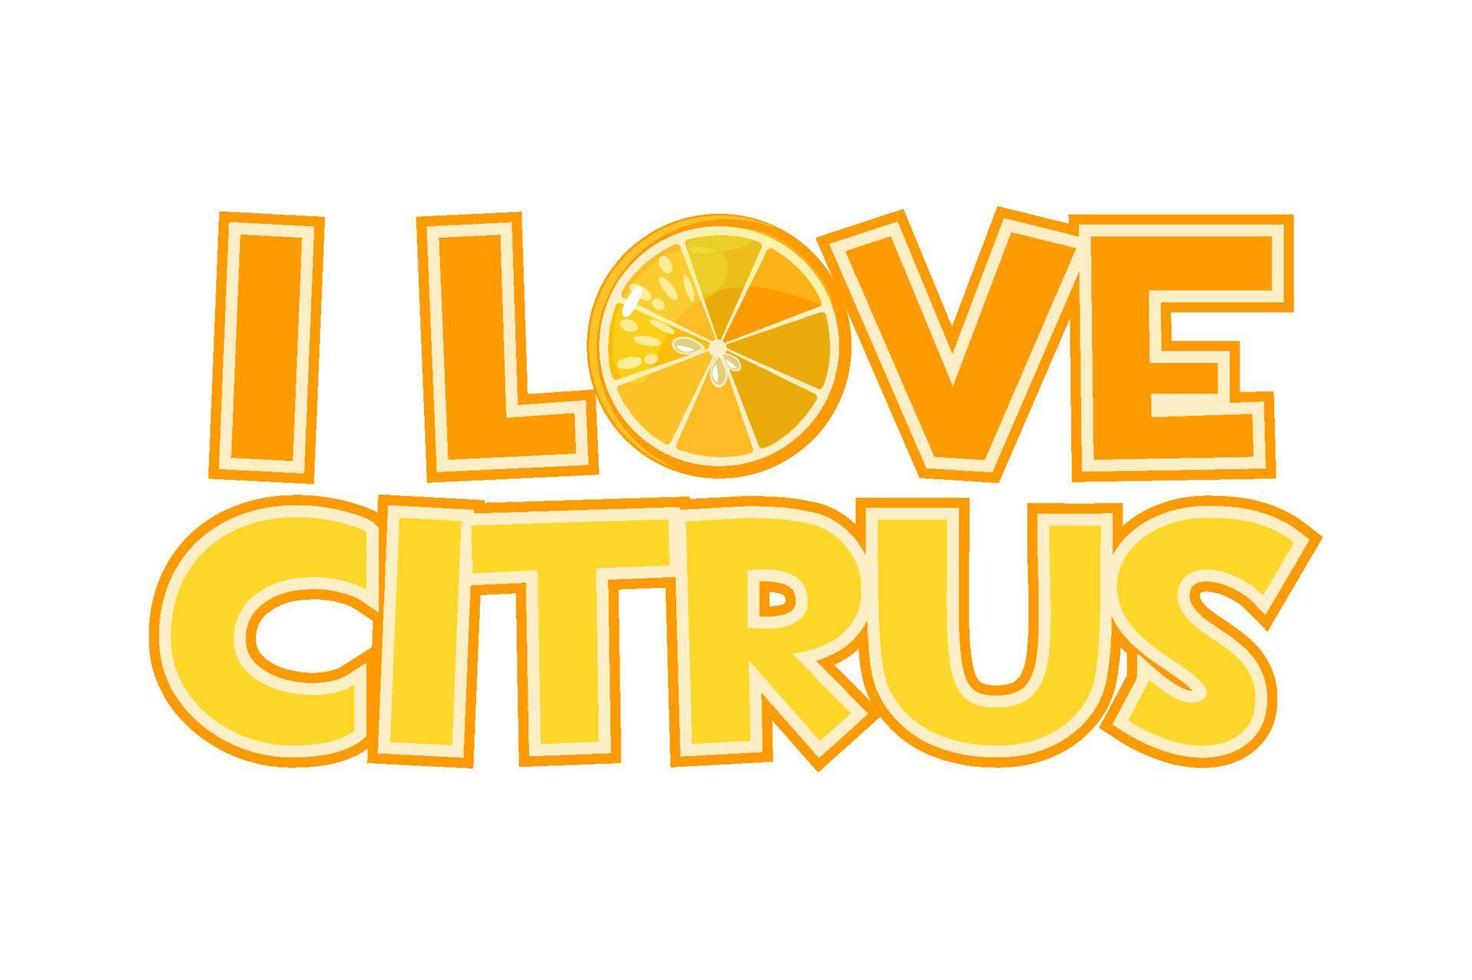 helle aufschrift ich liebe zitrus- und orangenscheiben. schönes Logo mit orangefarbenem Text. vektor